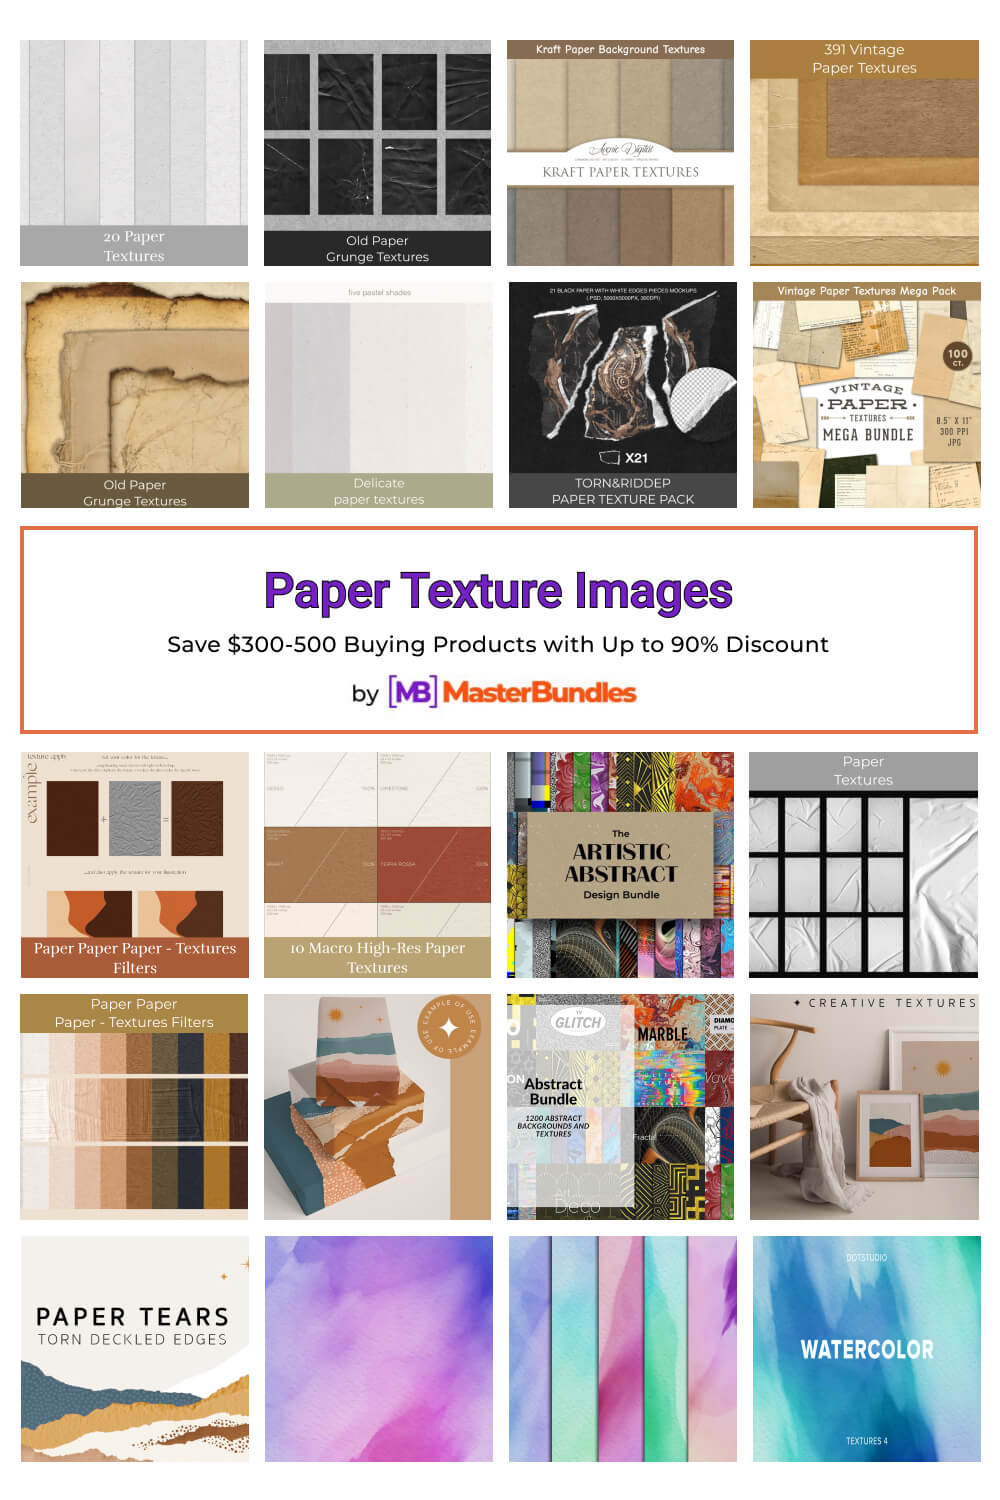 paper texture images pinterest image.